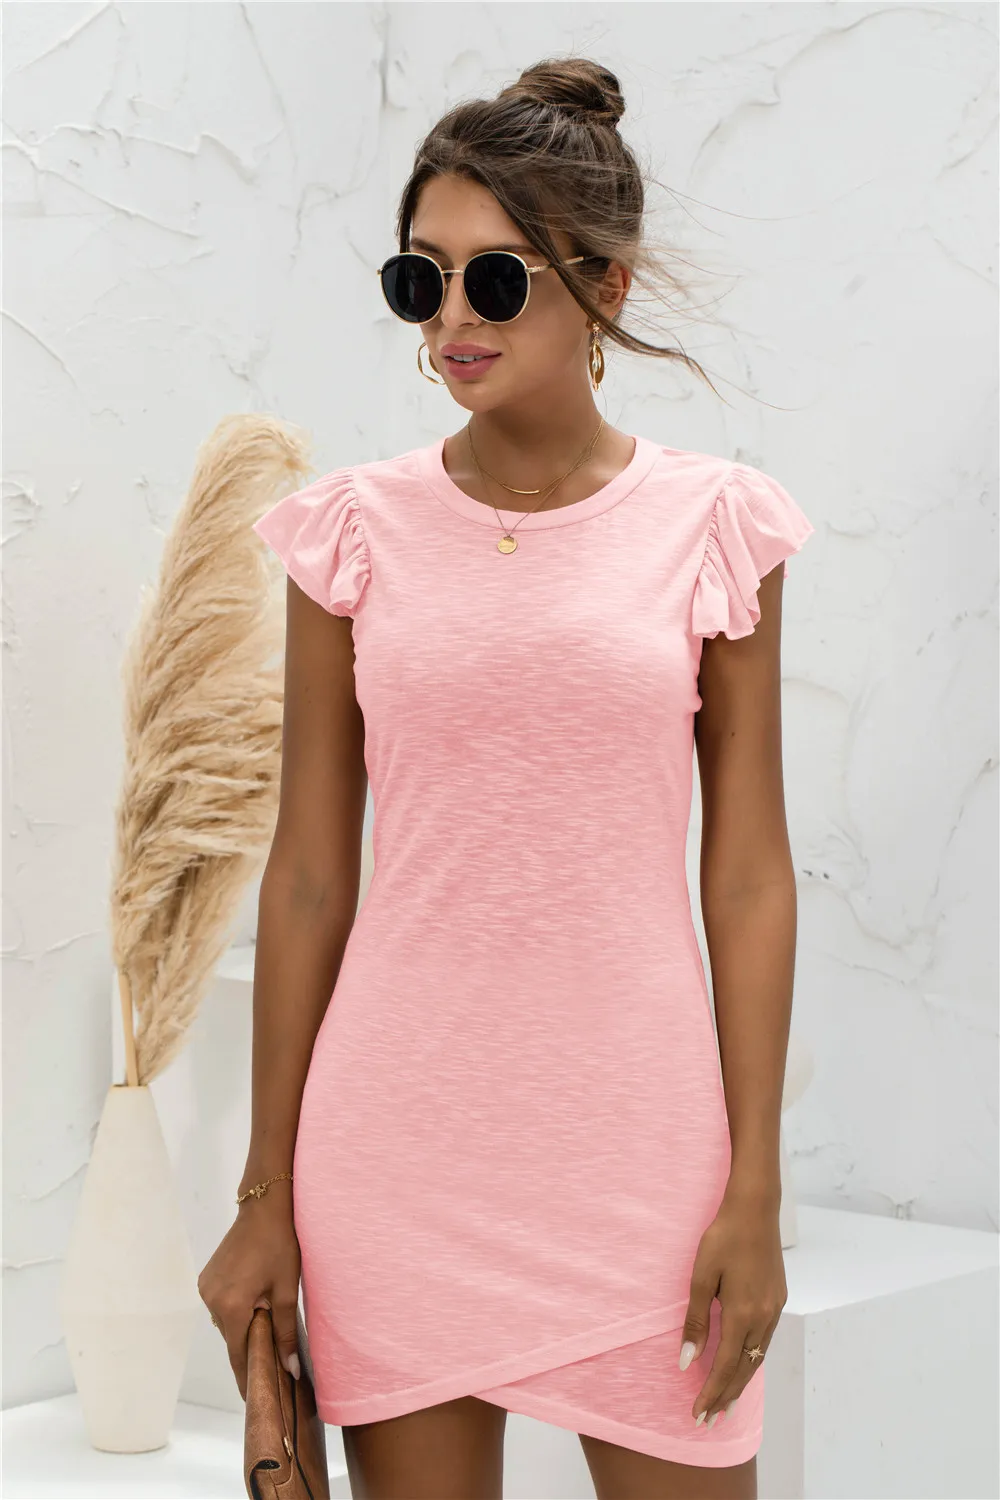 2021 summer new product hot sale ruffled short-sleeved cross dress corset dress